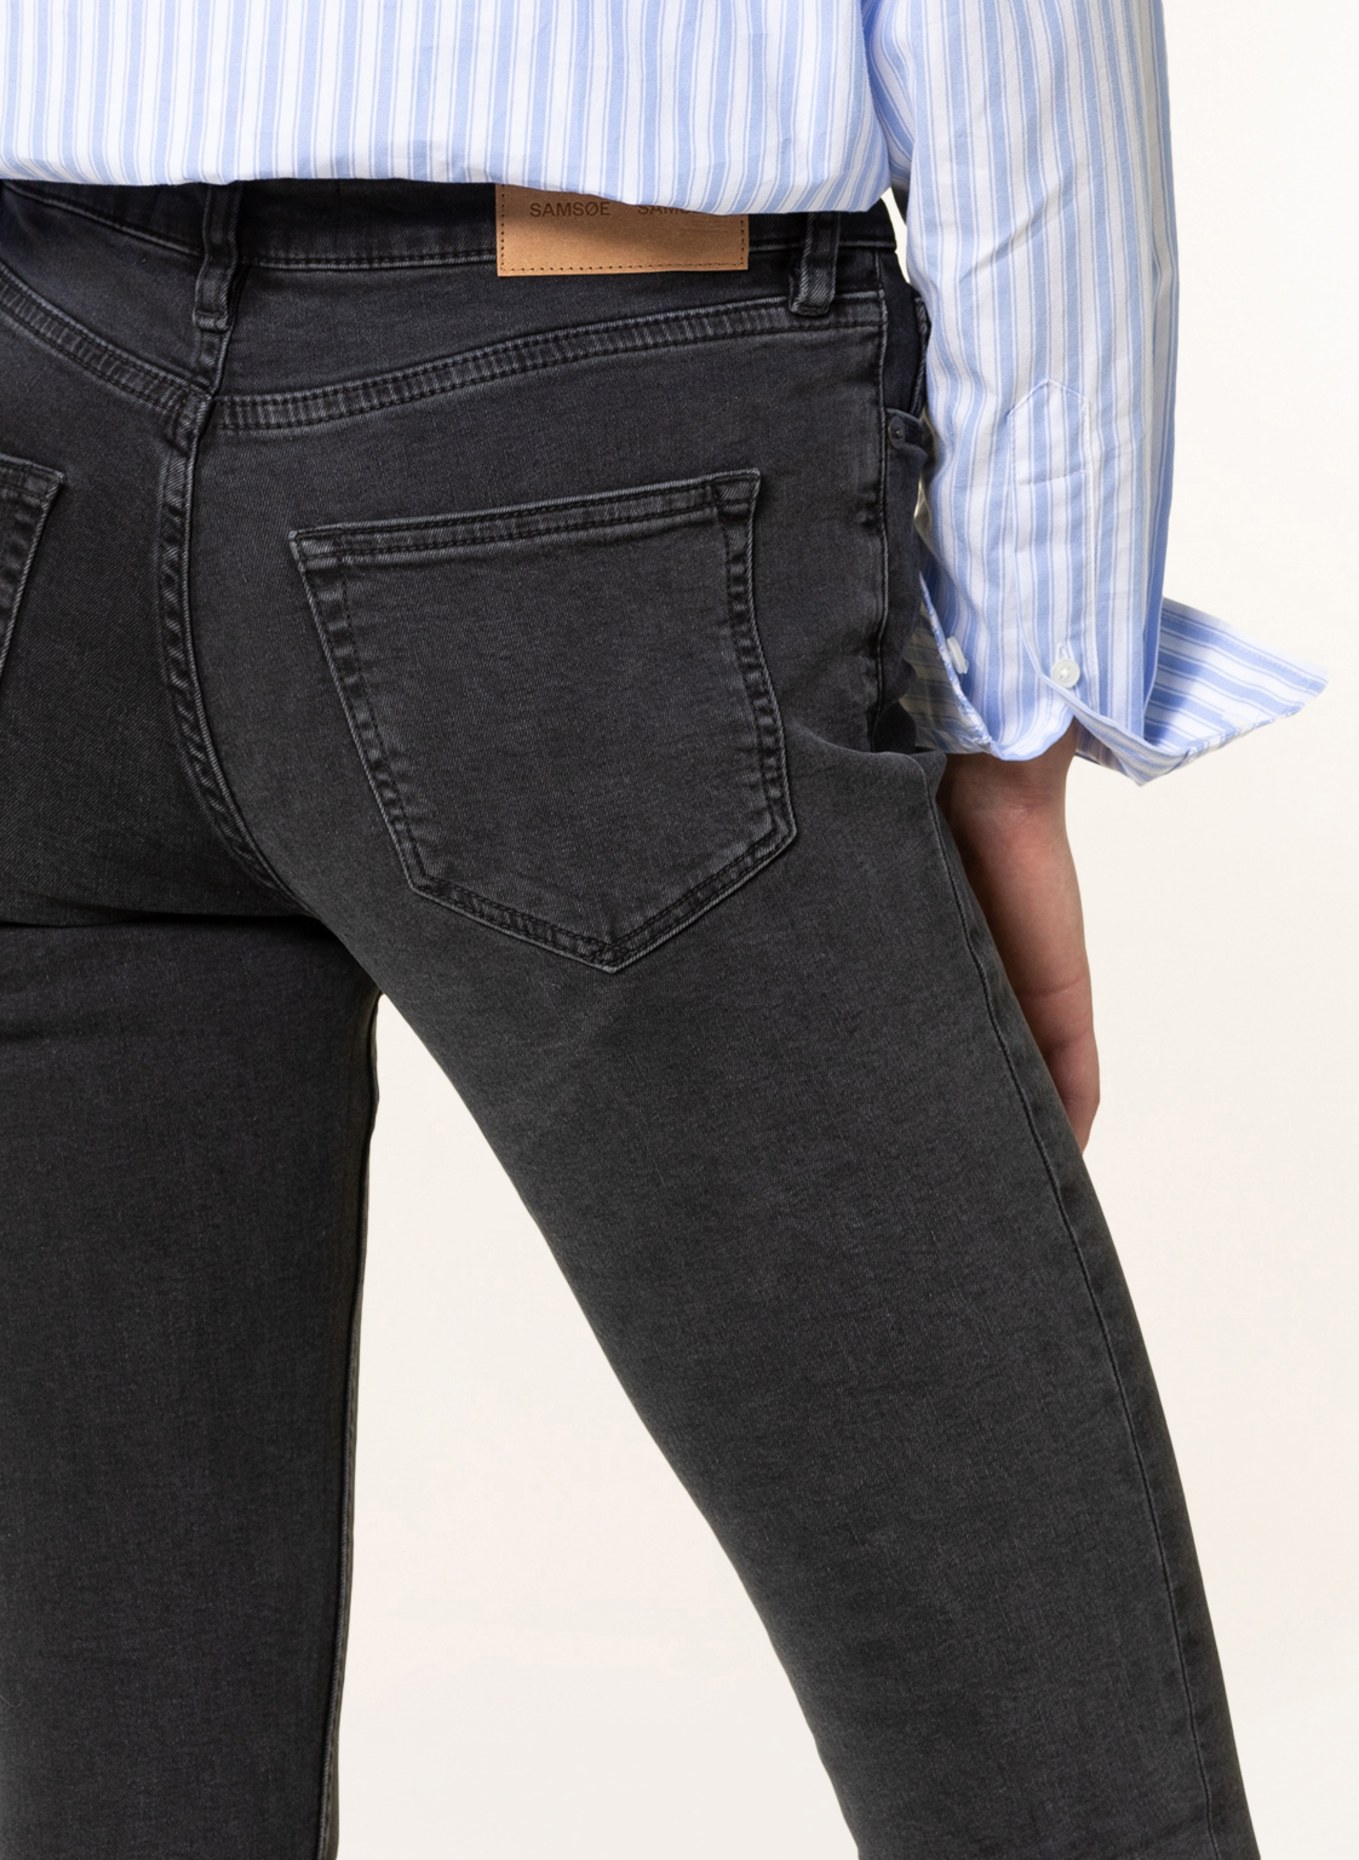 SAMSØE  SAMSØE Skinny jeans ALICE, Color: 00081 BLACK BIRD (Image 5)